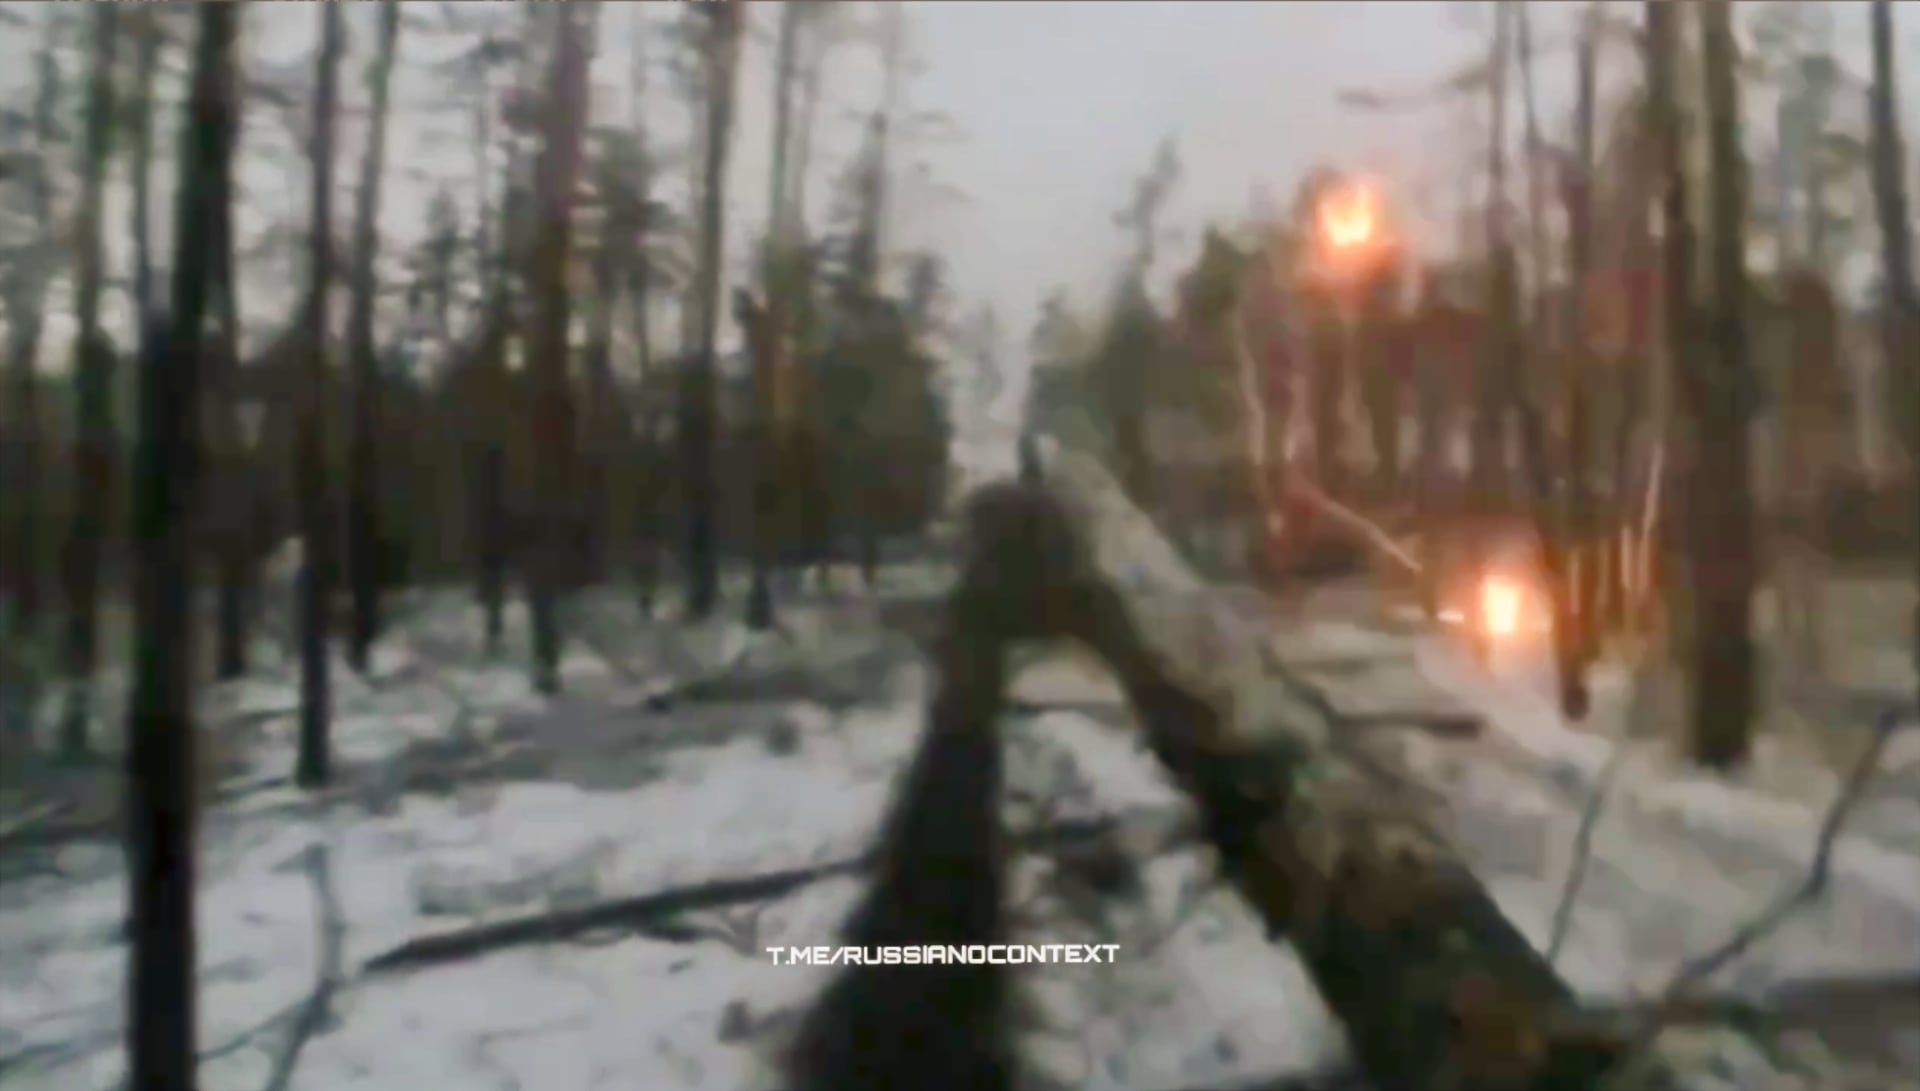 Rysk konvoj under attack av klustervapen: inspelning från ockupantens kamera (7 minuters video)